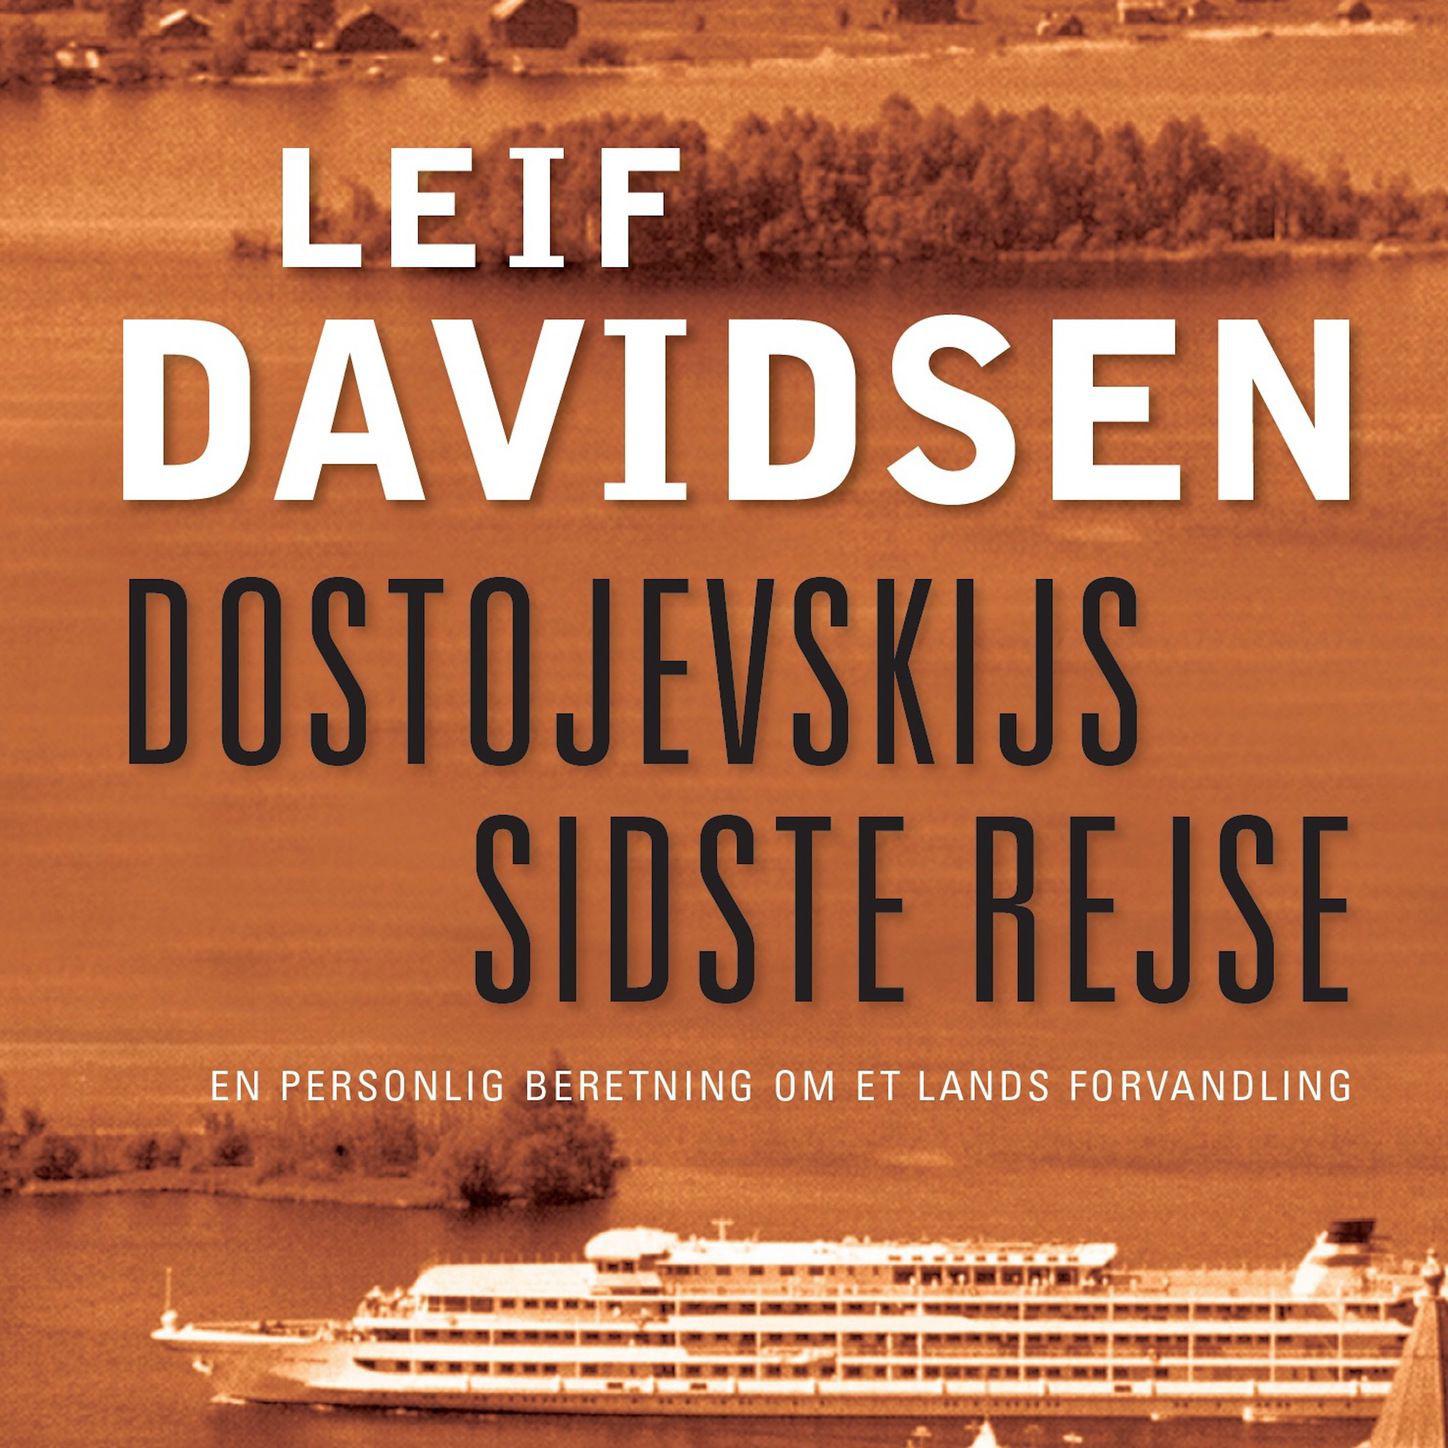 Dostojevskijs sidste rejse - En personlig beretning om et lands forvandling (uforkortet)